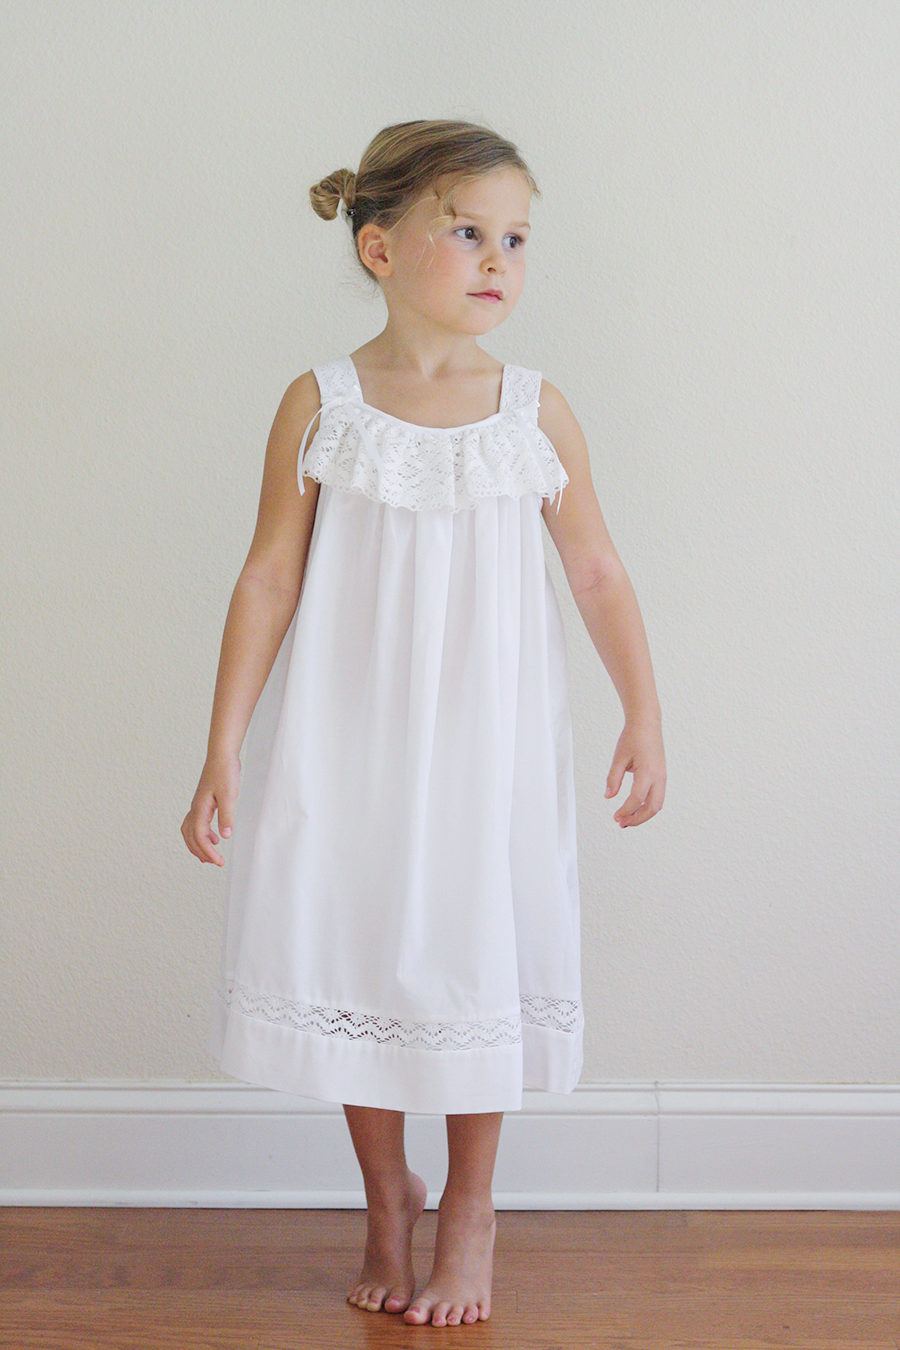 Strasburg Children | Girls White Lace Dress | Flower Girl | Ashlee Proffitt